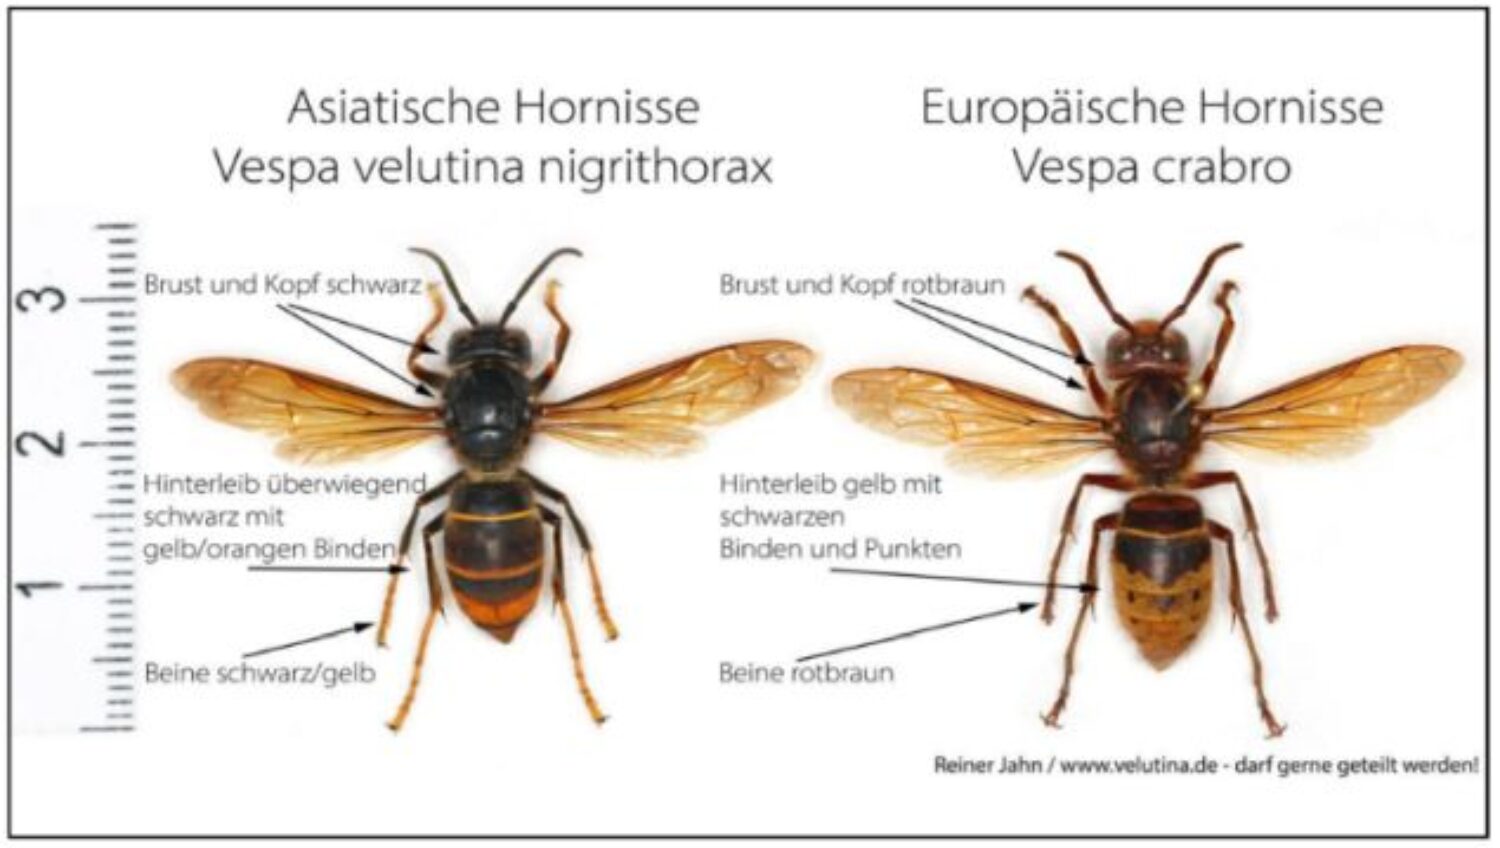 Asiatische Hornisse breitet sich in Heidelberg aus: Sichtung bei der Stadt melden – Invasive Art bedroht insbesondere Honigbienen! Für Menschen nicht gefährlicher als heimische Hornisse